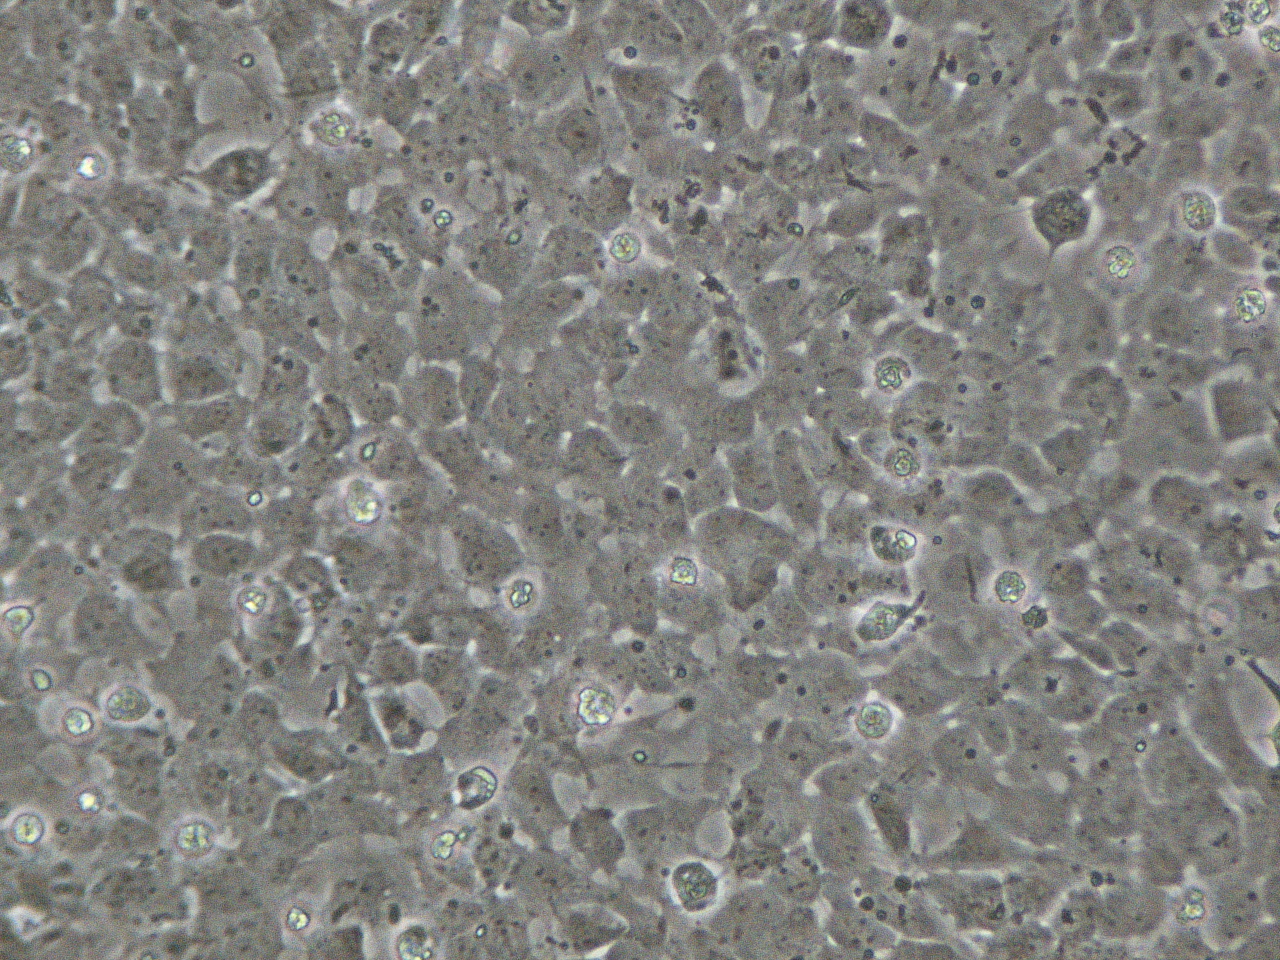 Isolamento delle cellule staminali